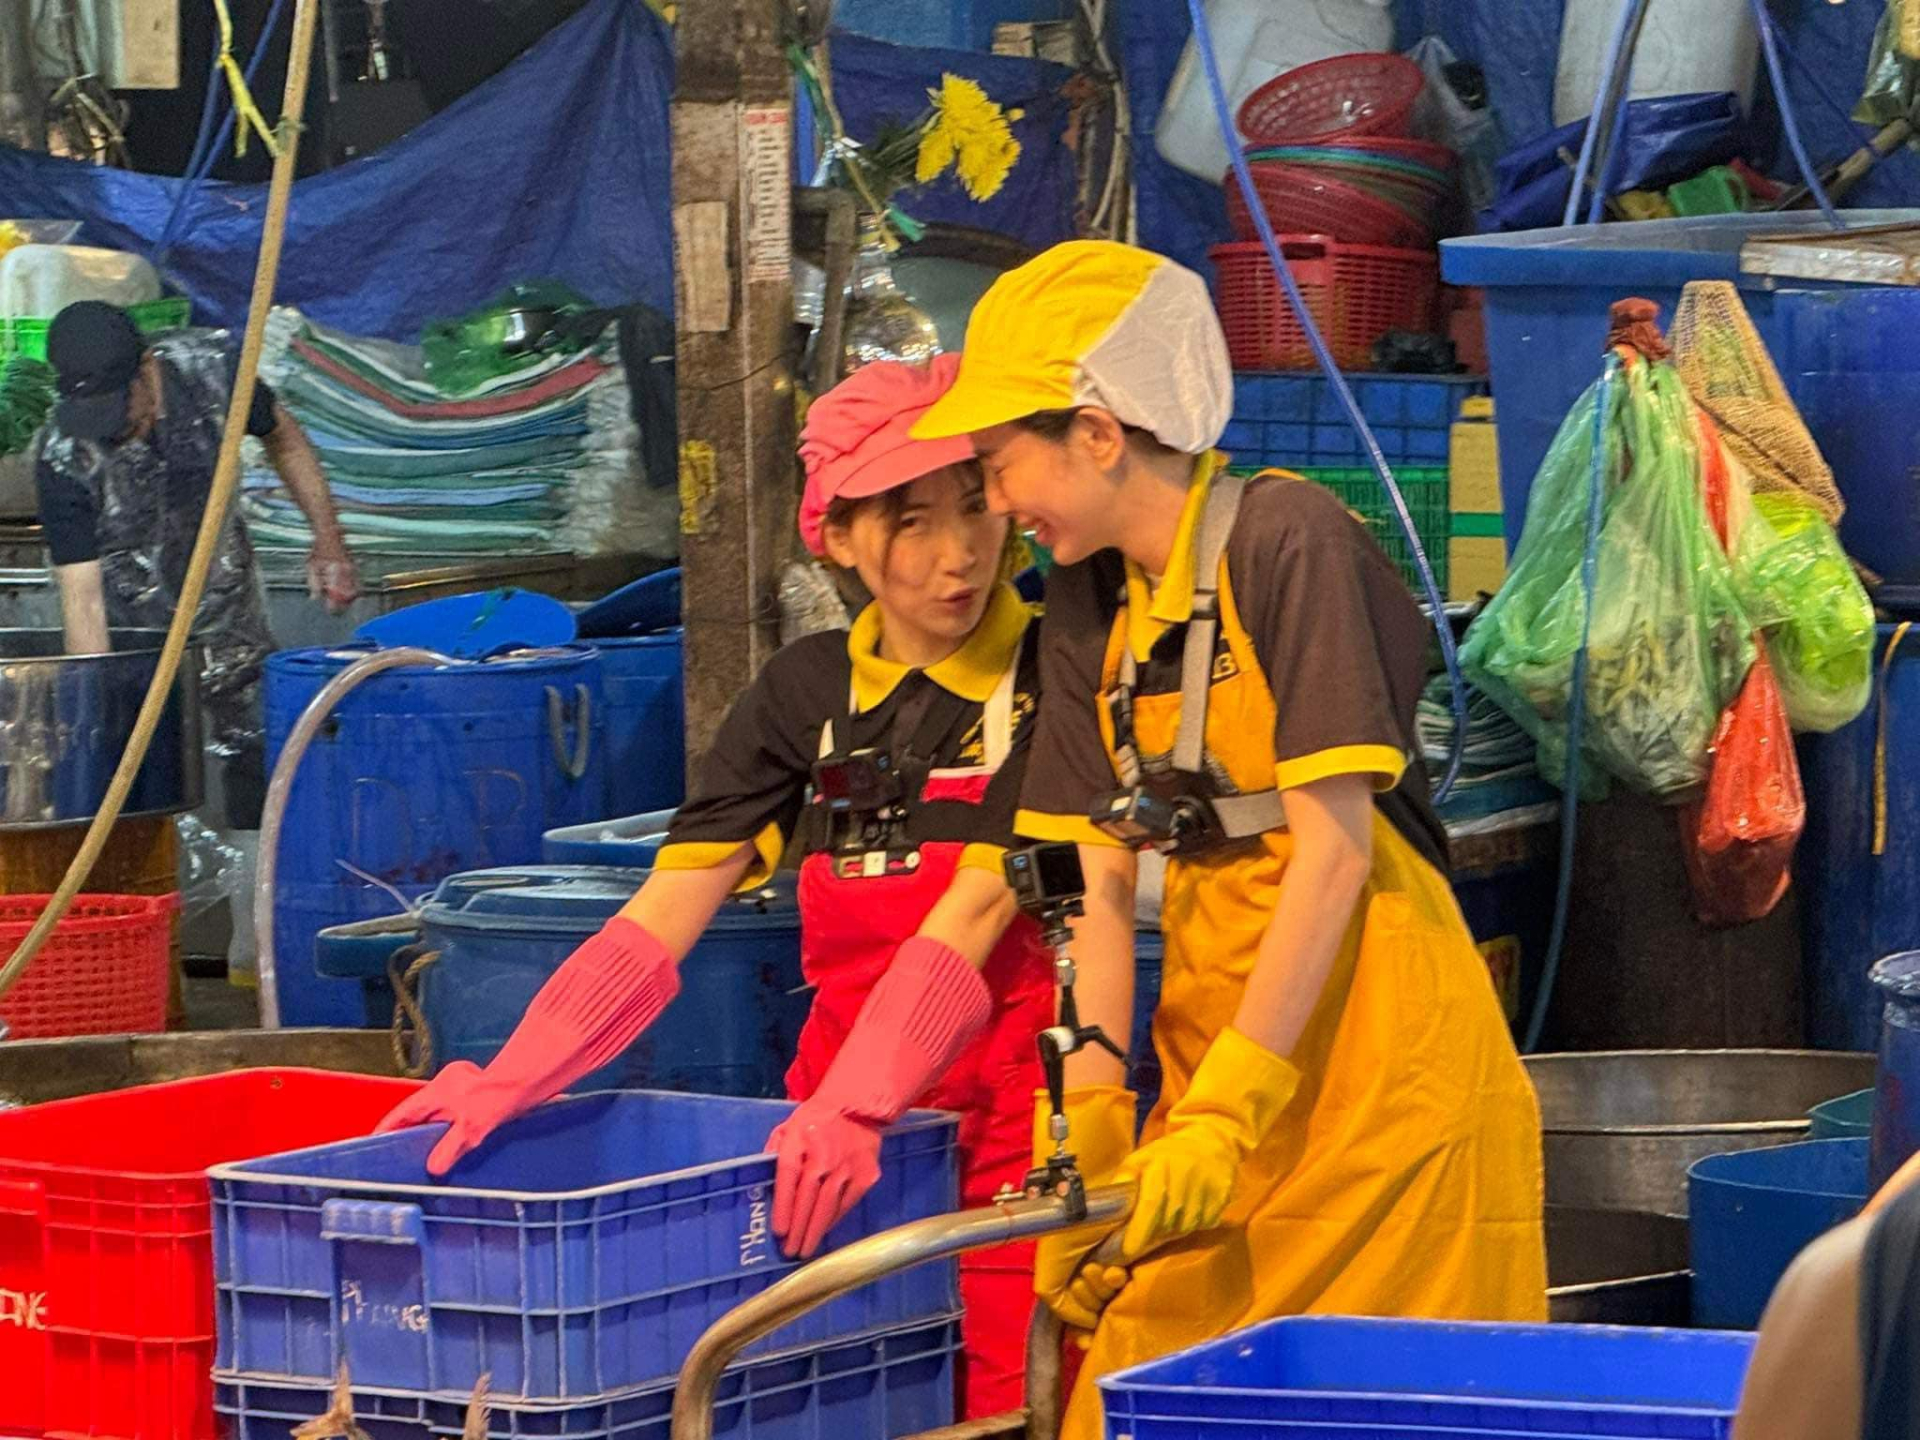 Hoa hậu Thùy Tiên rủ Hòa Minzy bán cá ở chợ Bình Điền - ảnh 3